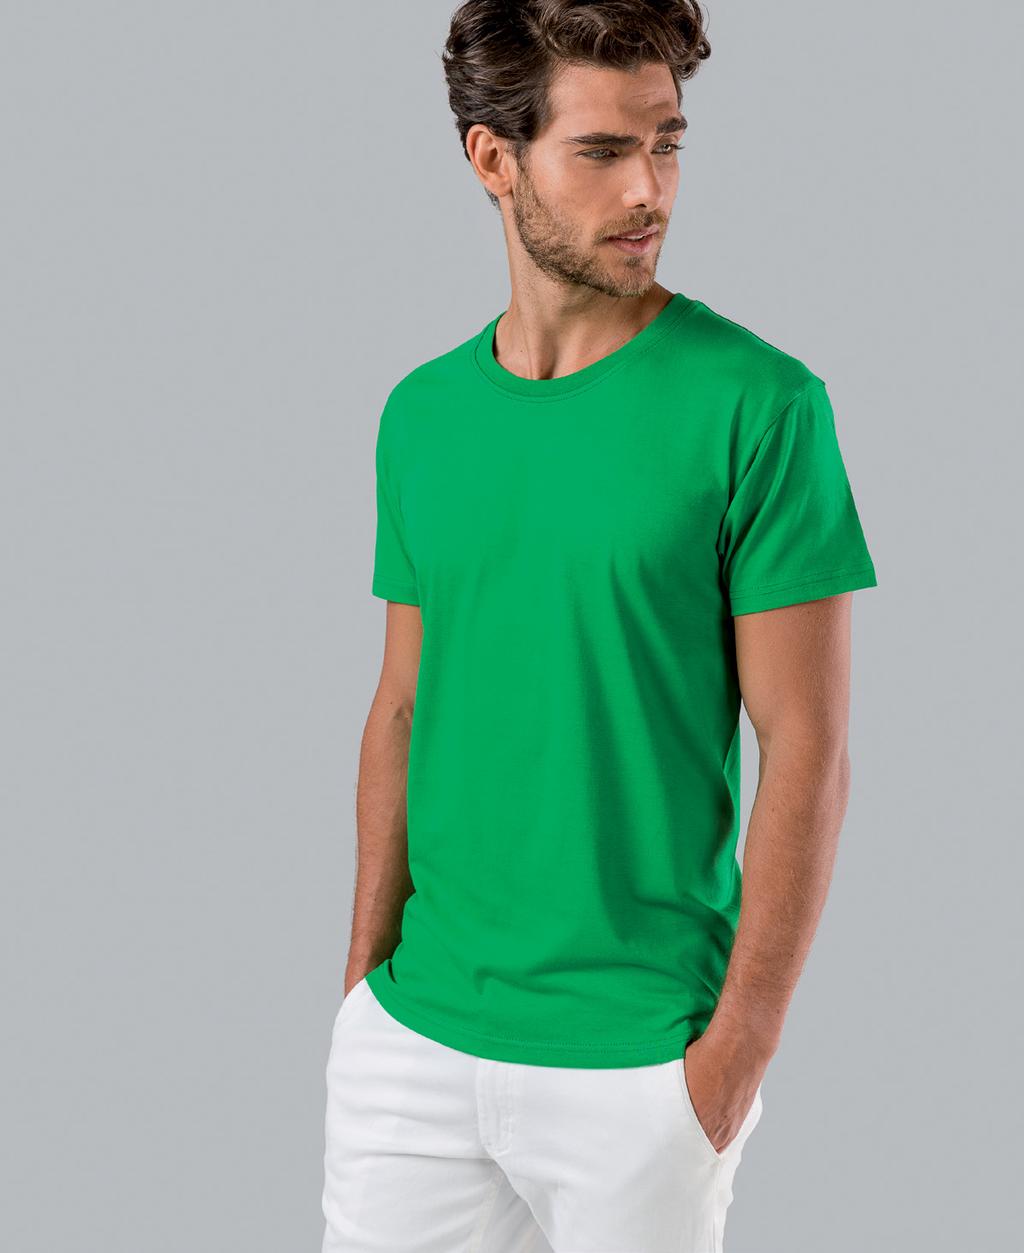 NKR t-shirt para homem 190 g/m 2 TH Clothes reverte parte das vendas da gama NKR a favor da MI.